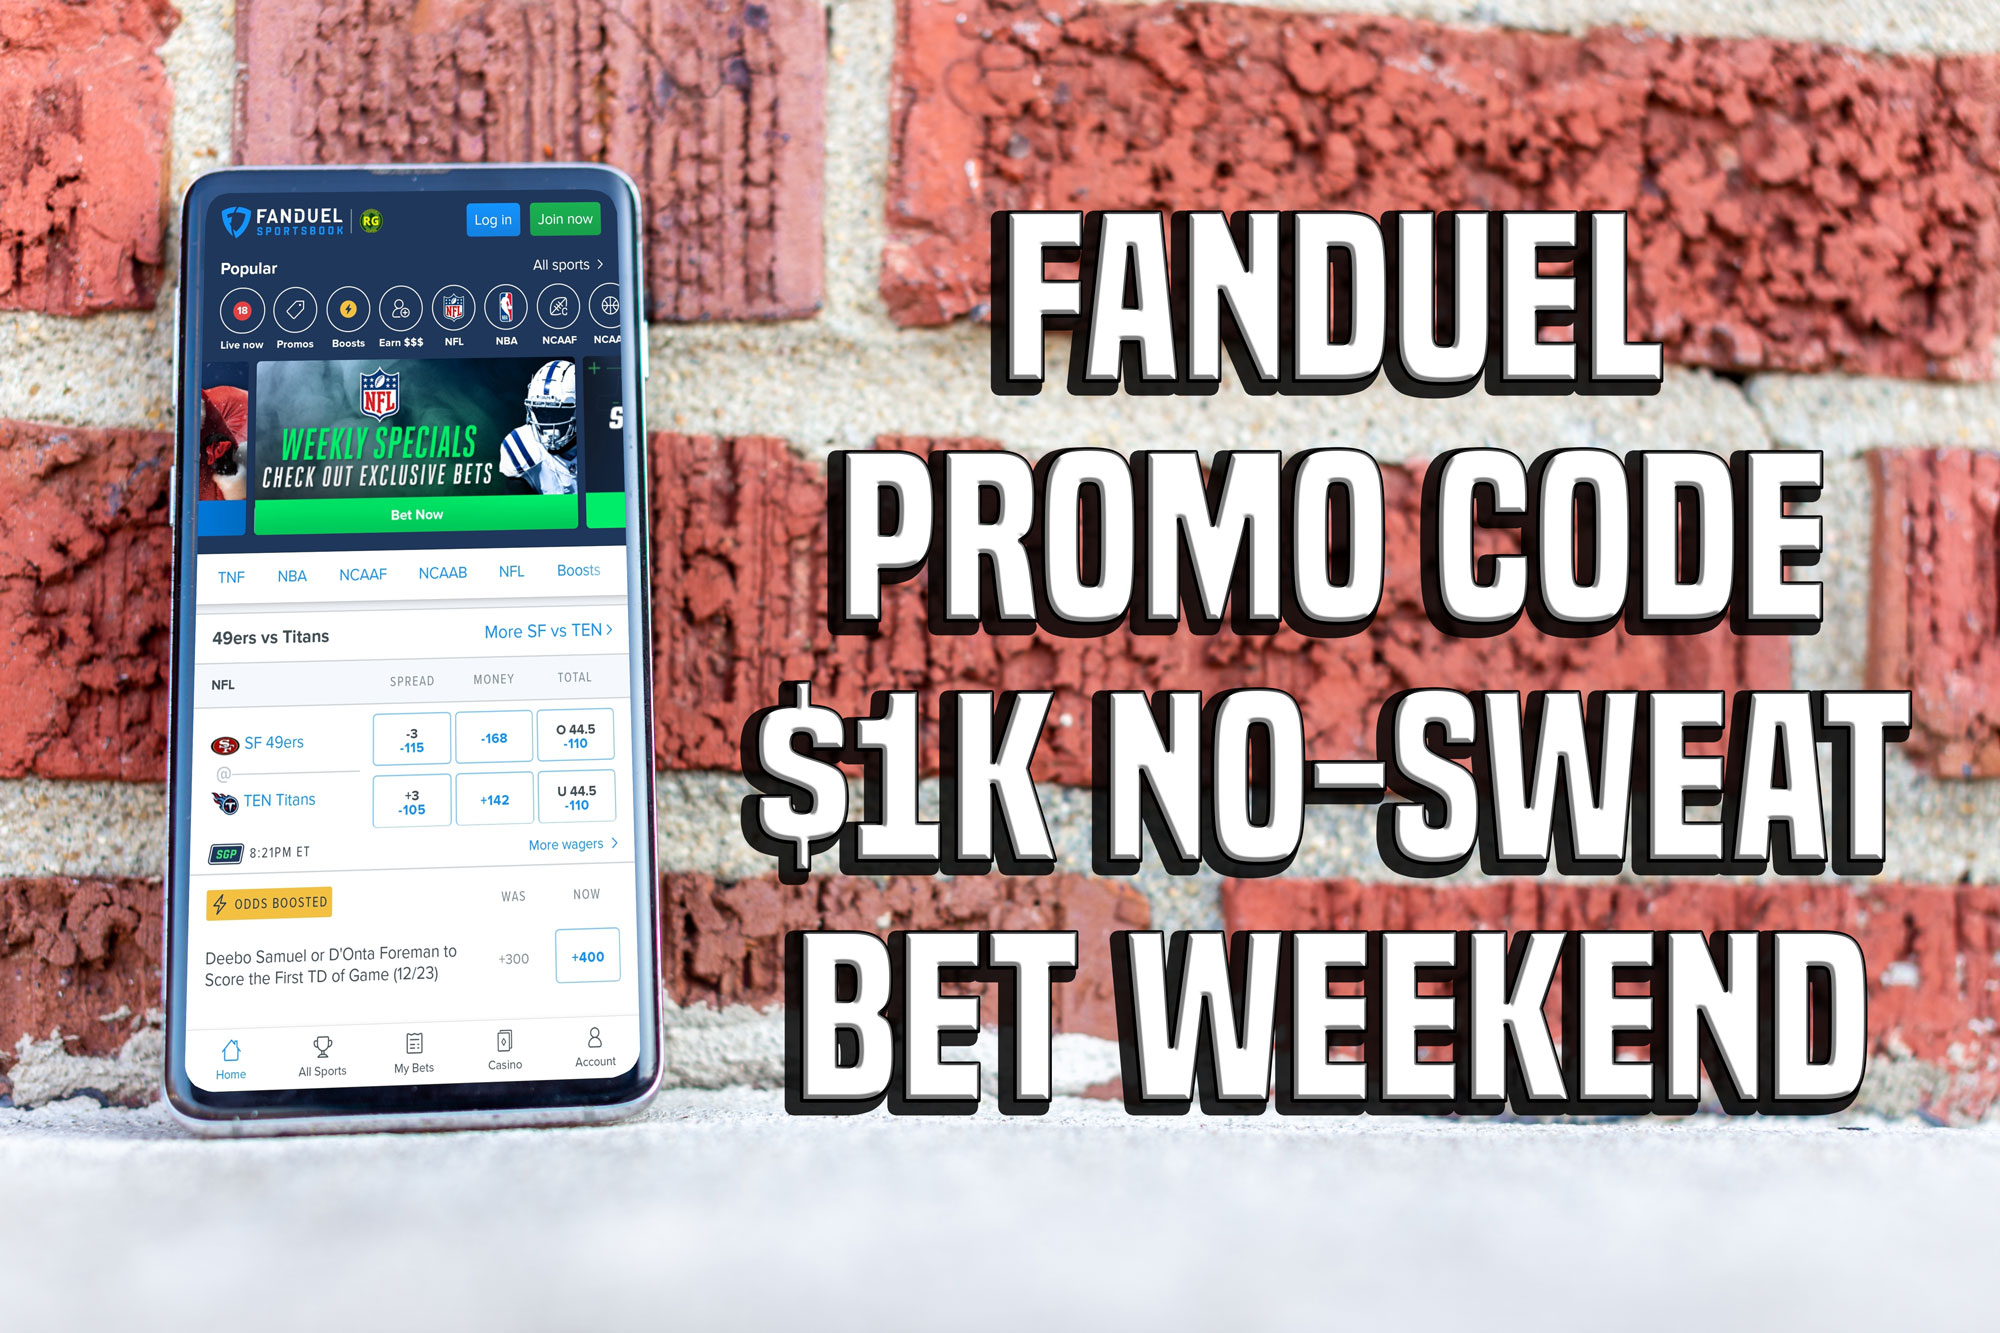 Monday Night Football: FanDuel Promo Code Nets $1,000 No-Sweat Bet